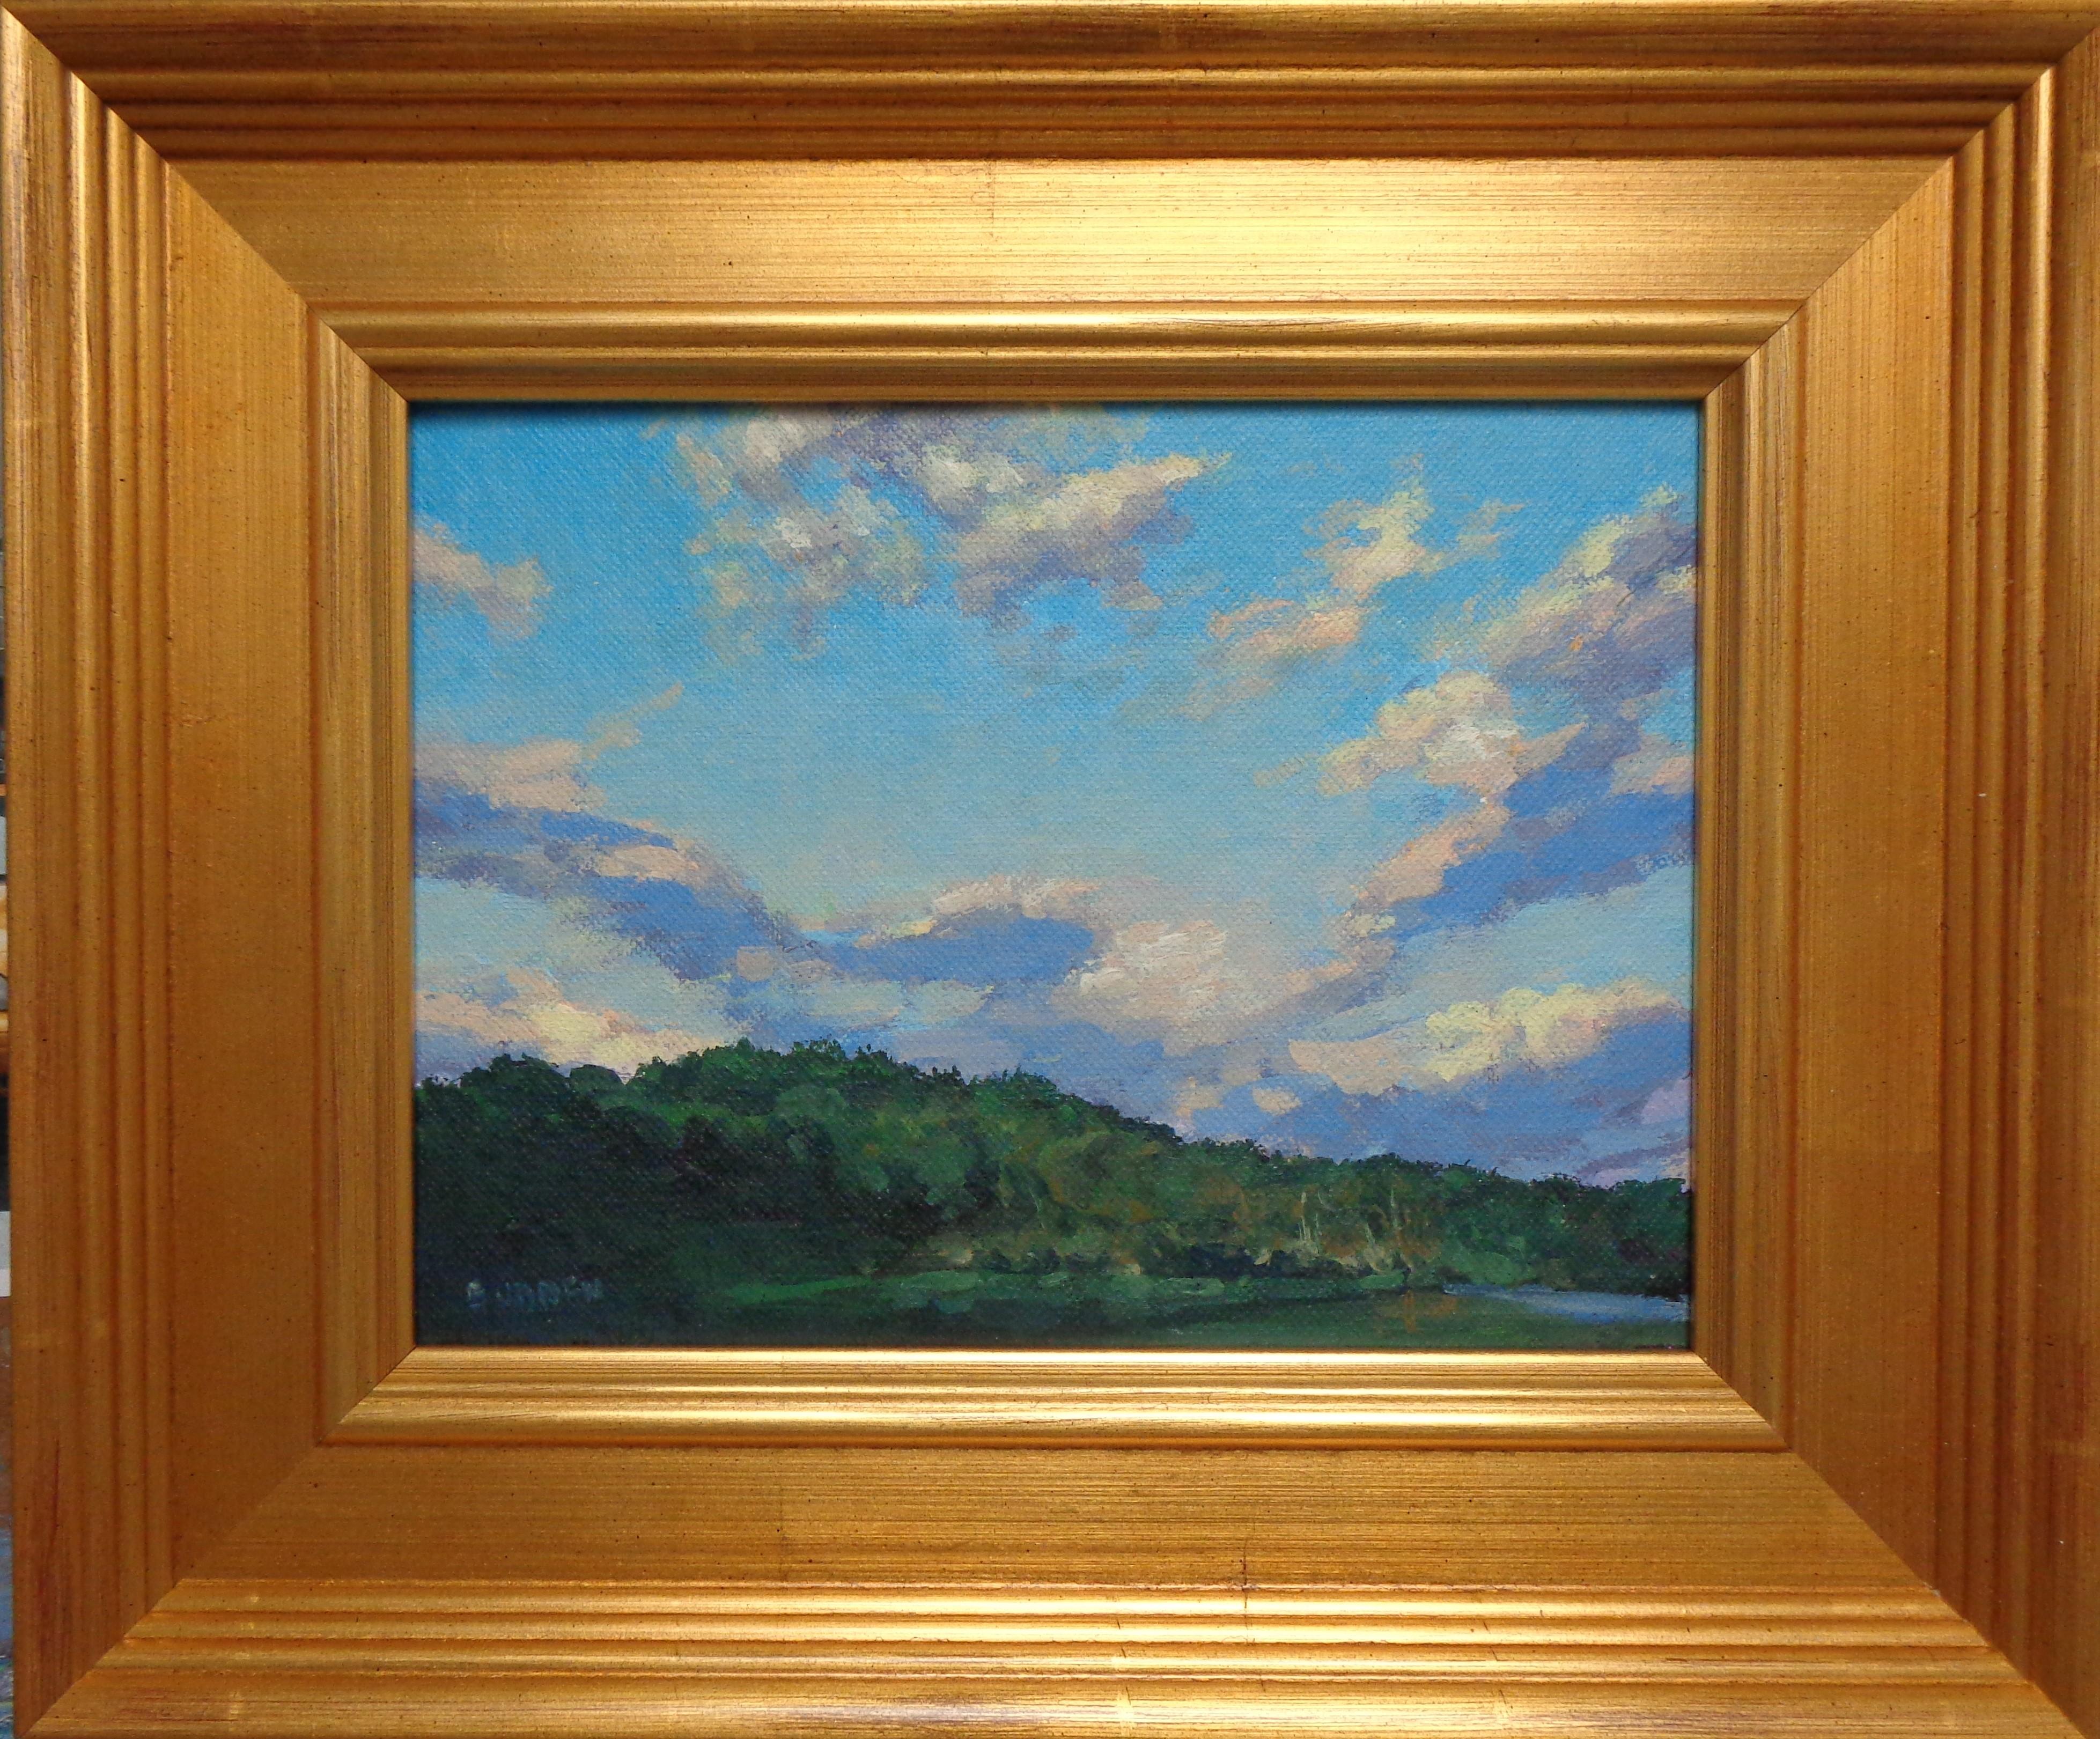 Beautiful Skies Studienreihe
Öl/Panel 6 x 8 Bild
Beautiful Skies ist ein Ölgemälde auf Leinwand des preisgekrönten zeitgenössischen Künstlers Michael Budden, das eine schöne ländliche Landschaft mit einem dramatischen Sonnenhimmel mit einer